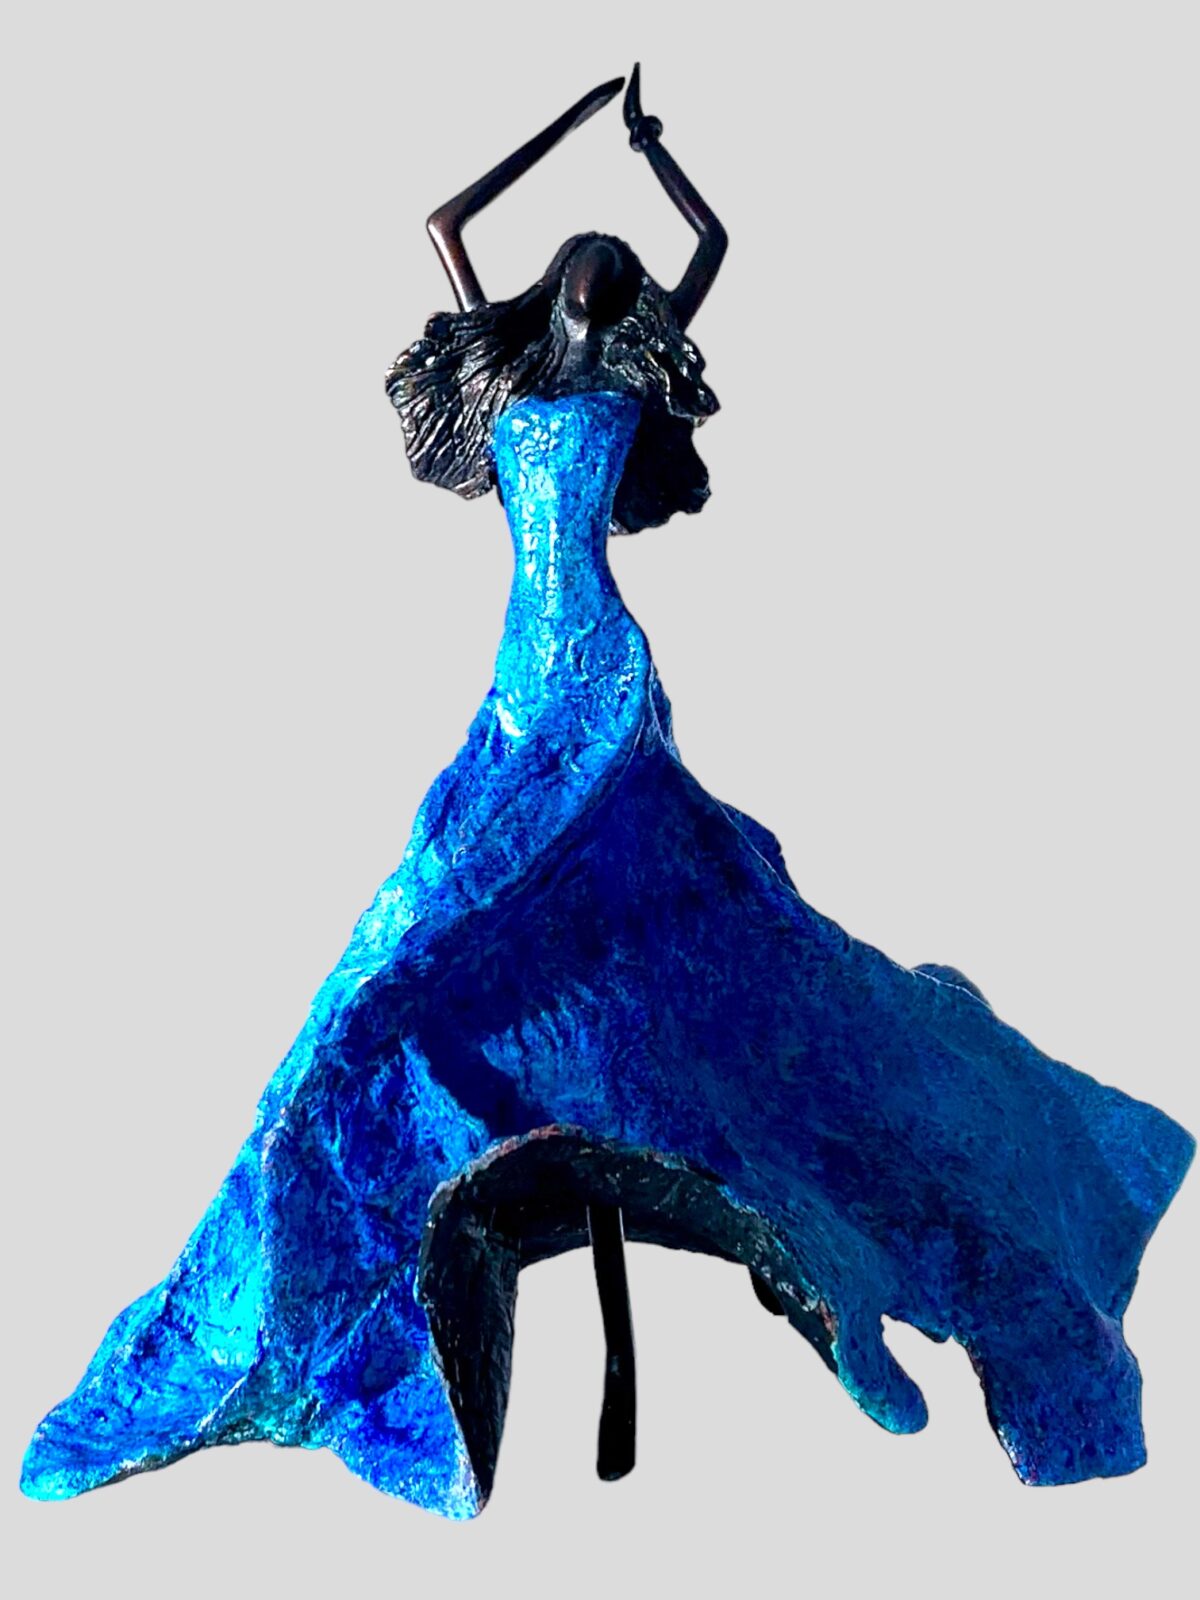 GRACIAS A LA VIDA AZUL - Bronze femme avec une robe aux nuances bleues - patines noire et bleue - oeuvre unique - Magali Willems